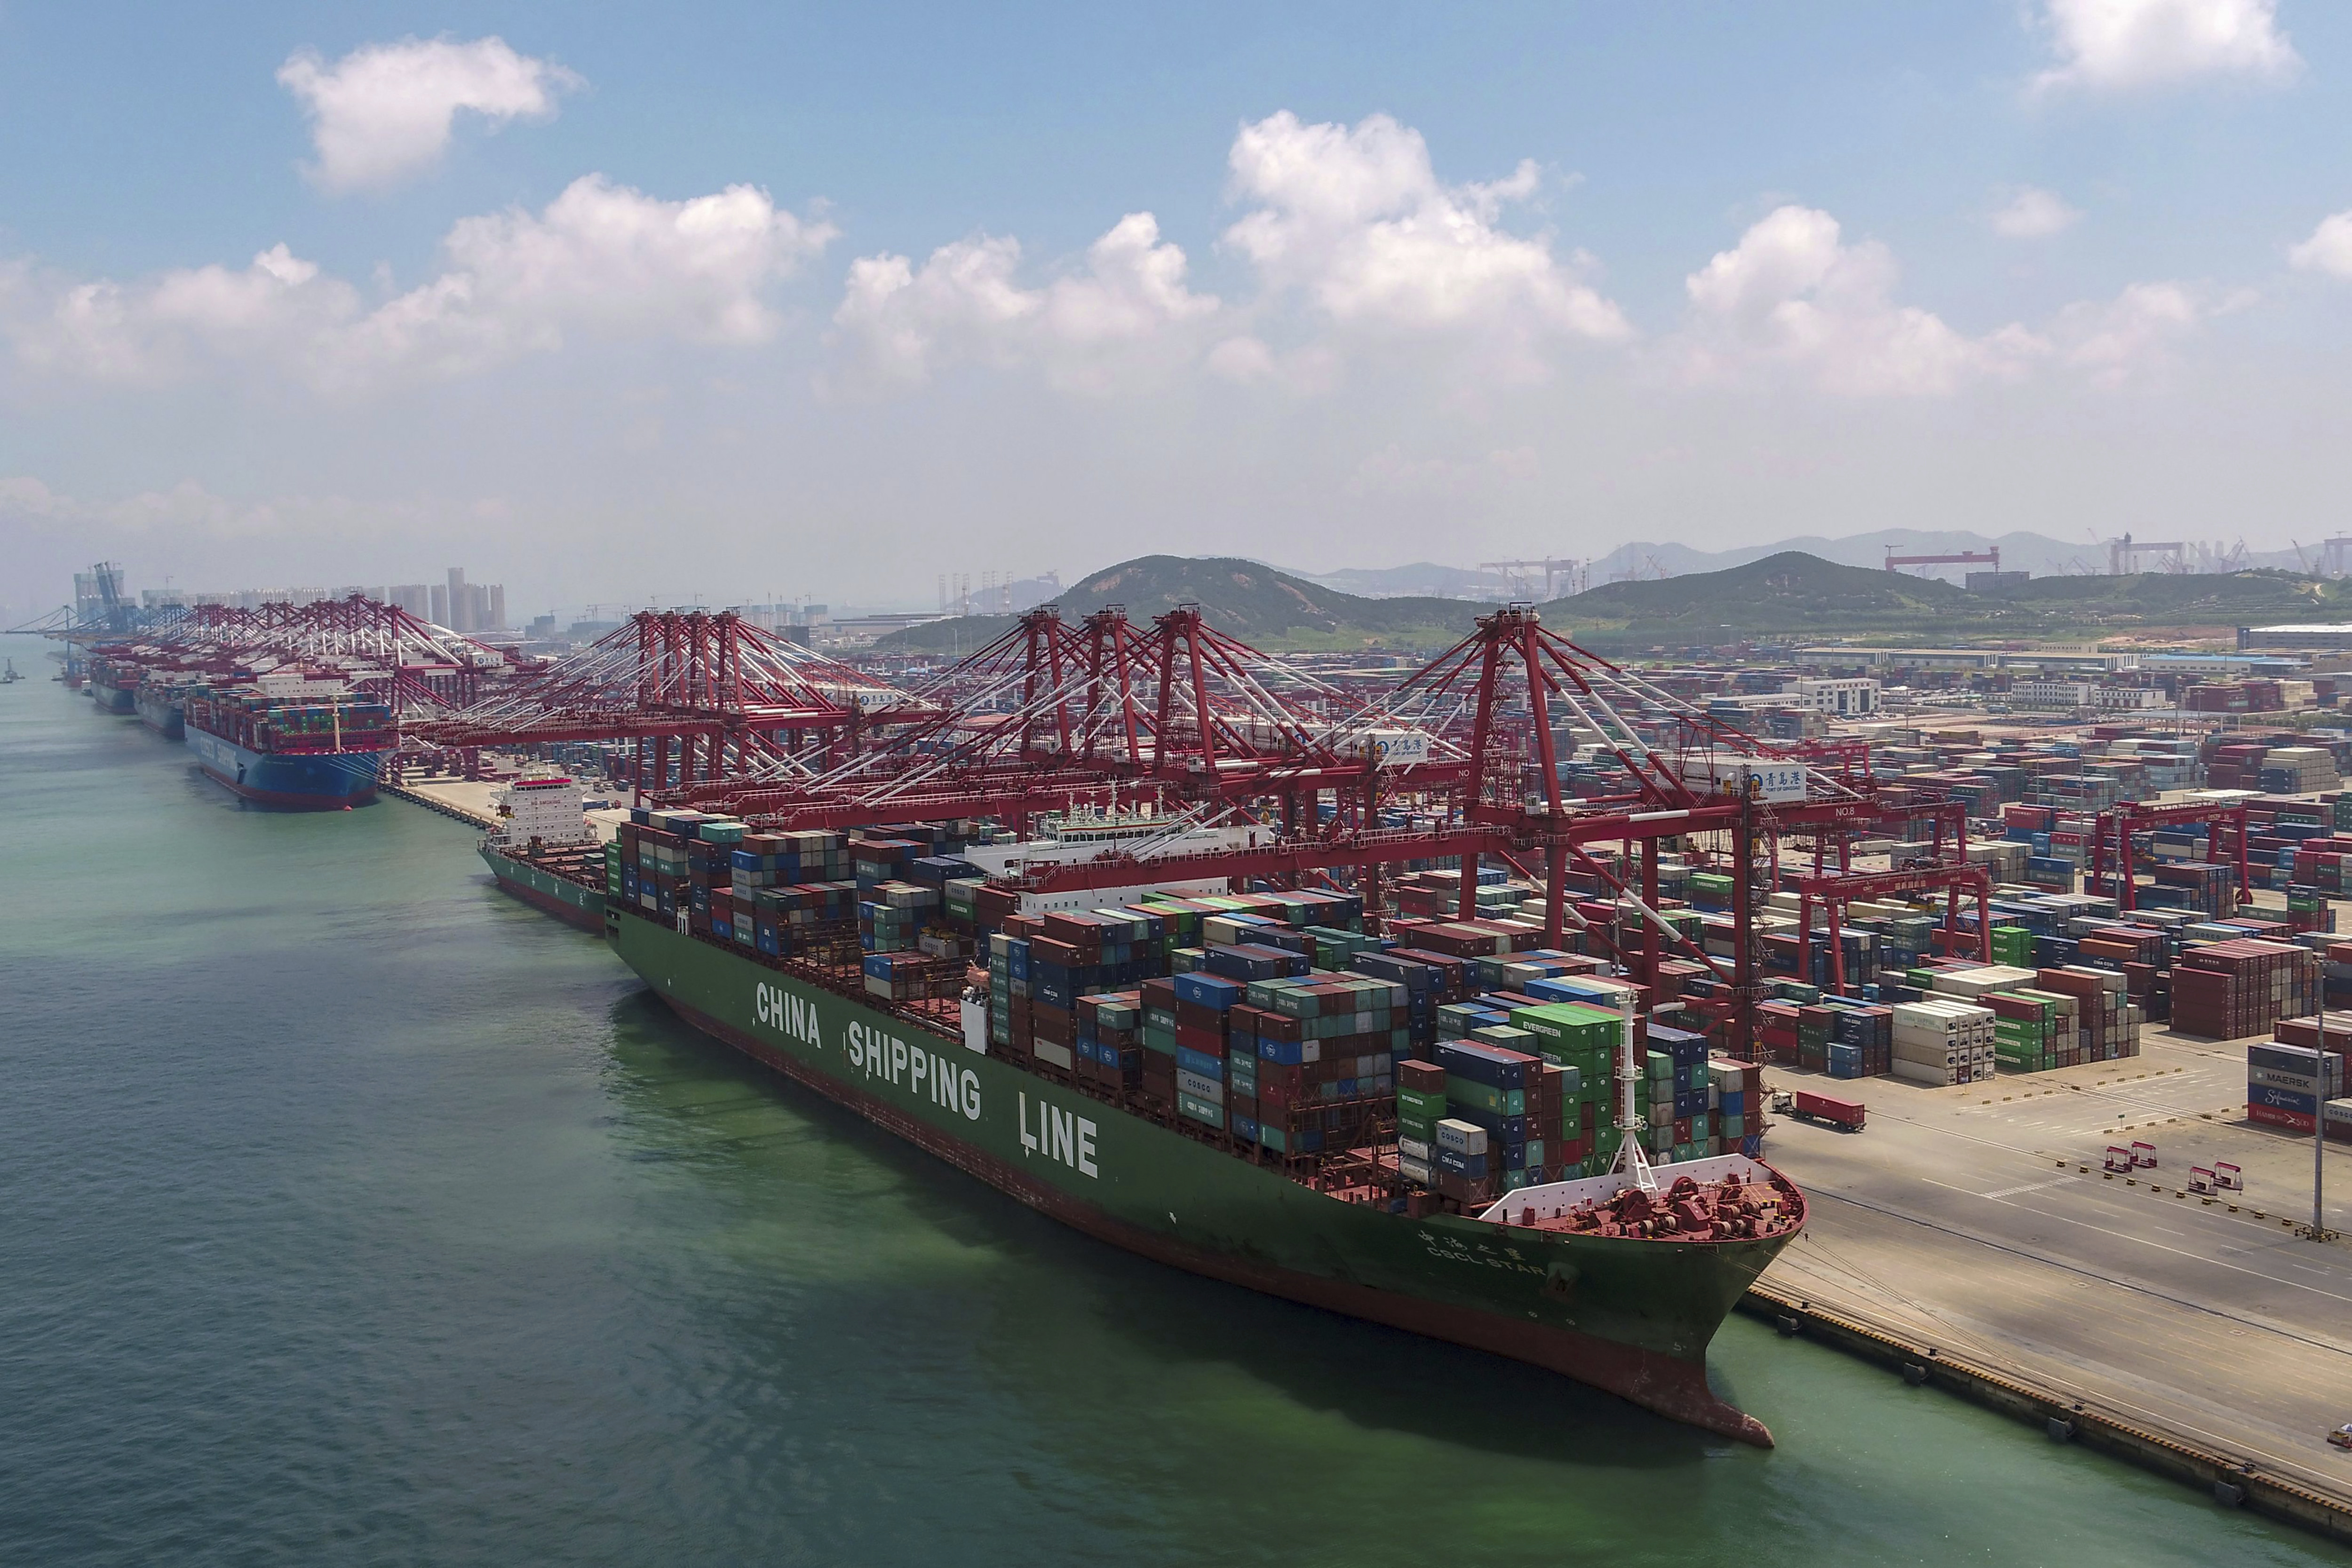 Ein Containerschiff der China Shipping Line legt im Hafen der Provinz Shandong an | picture alliance/dpa/CHINATOPIX/AP